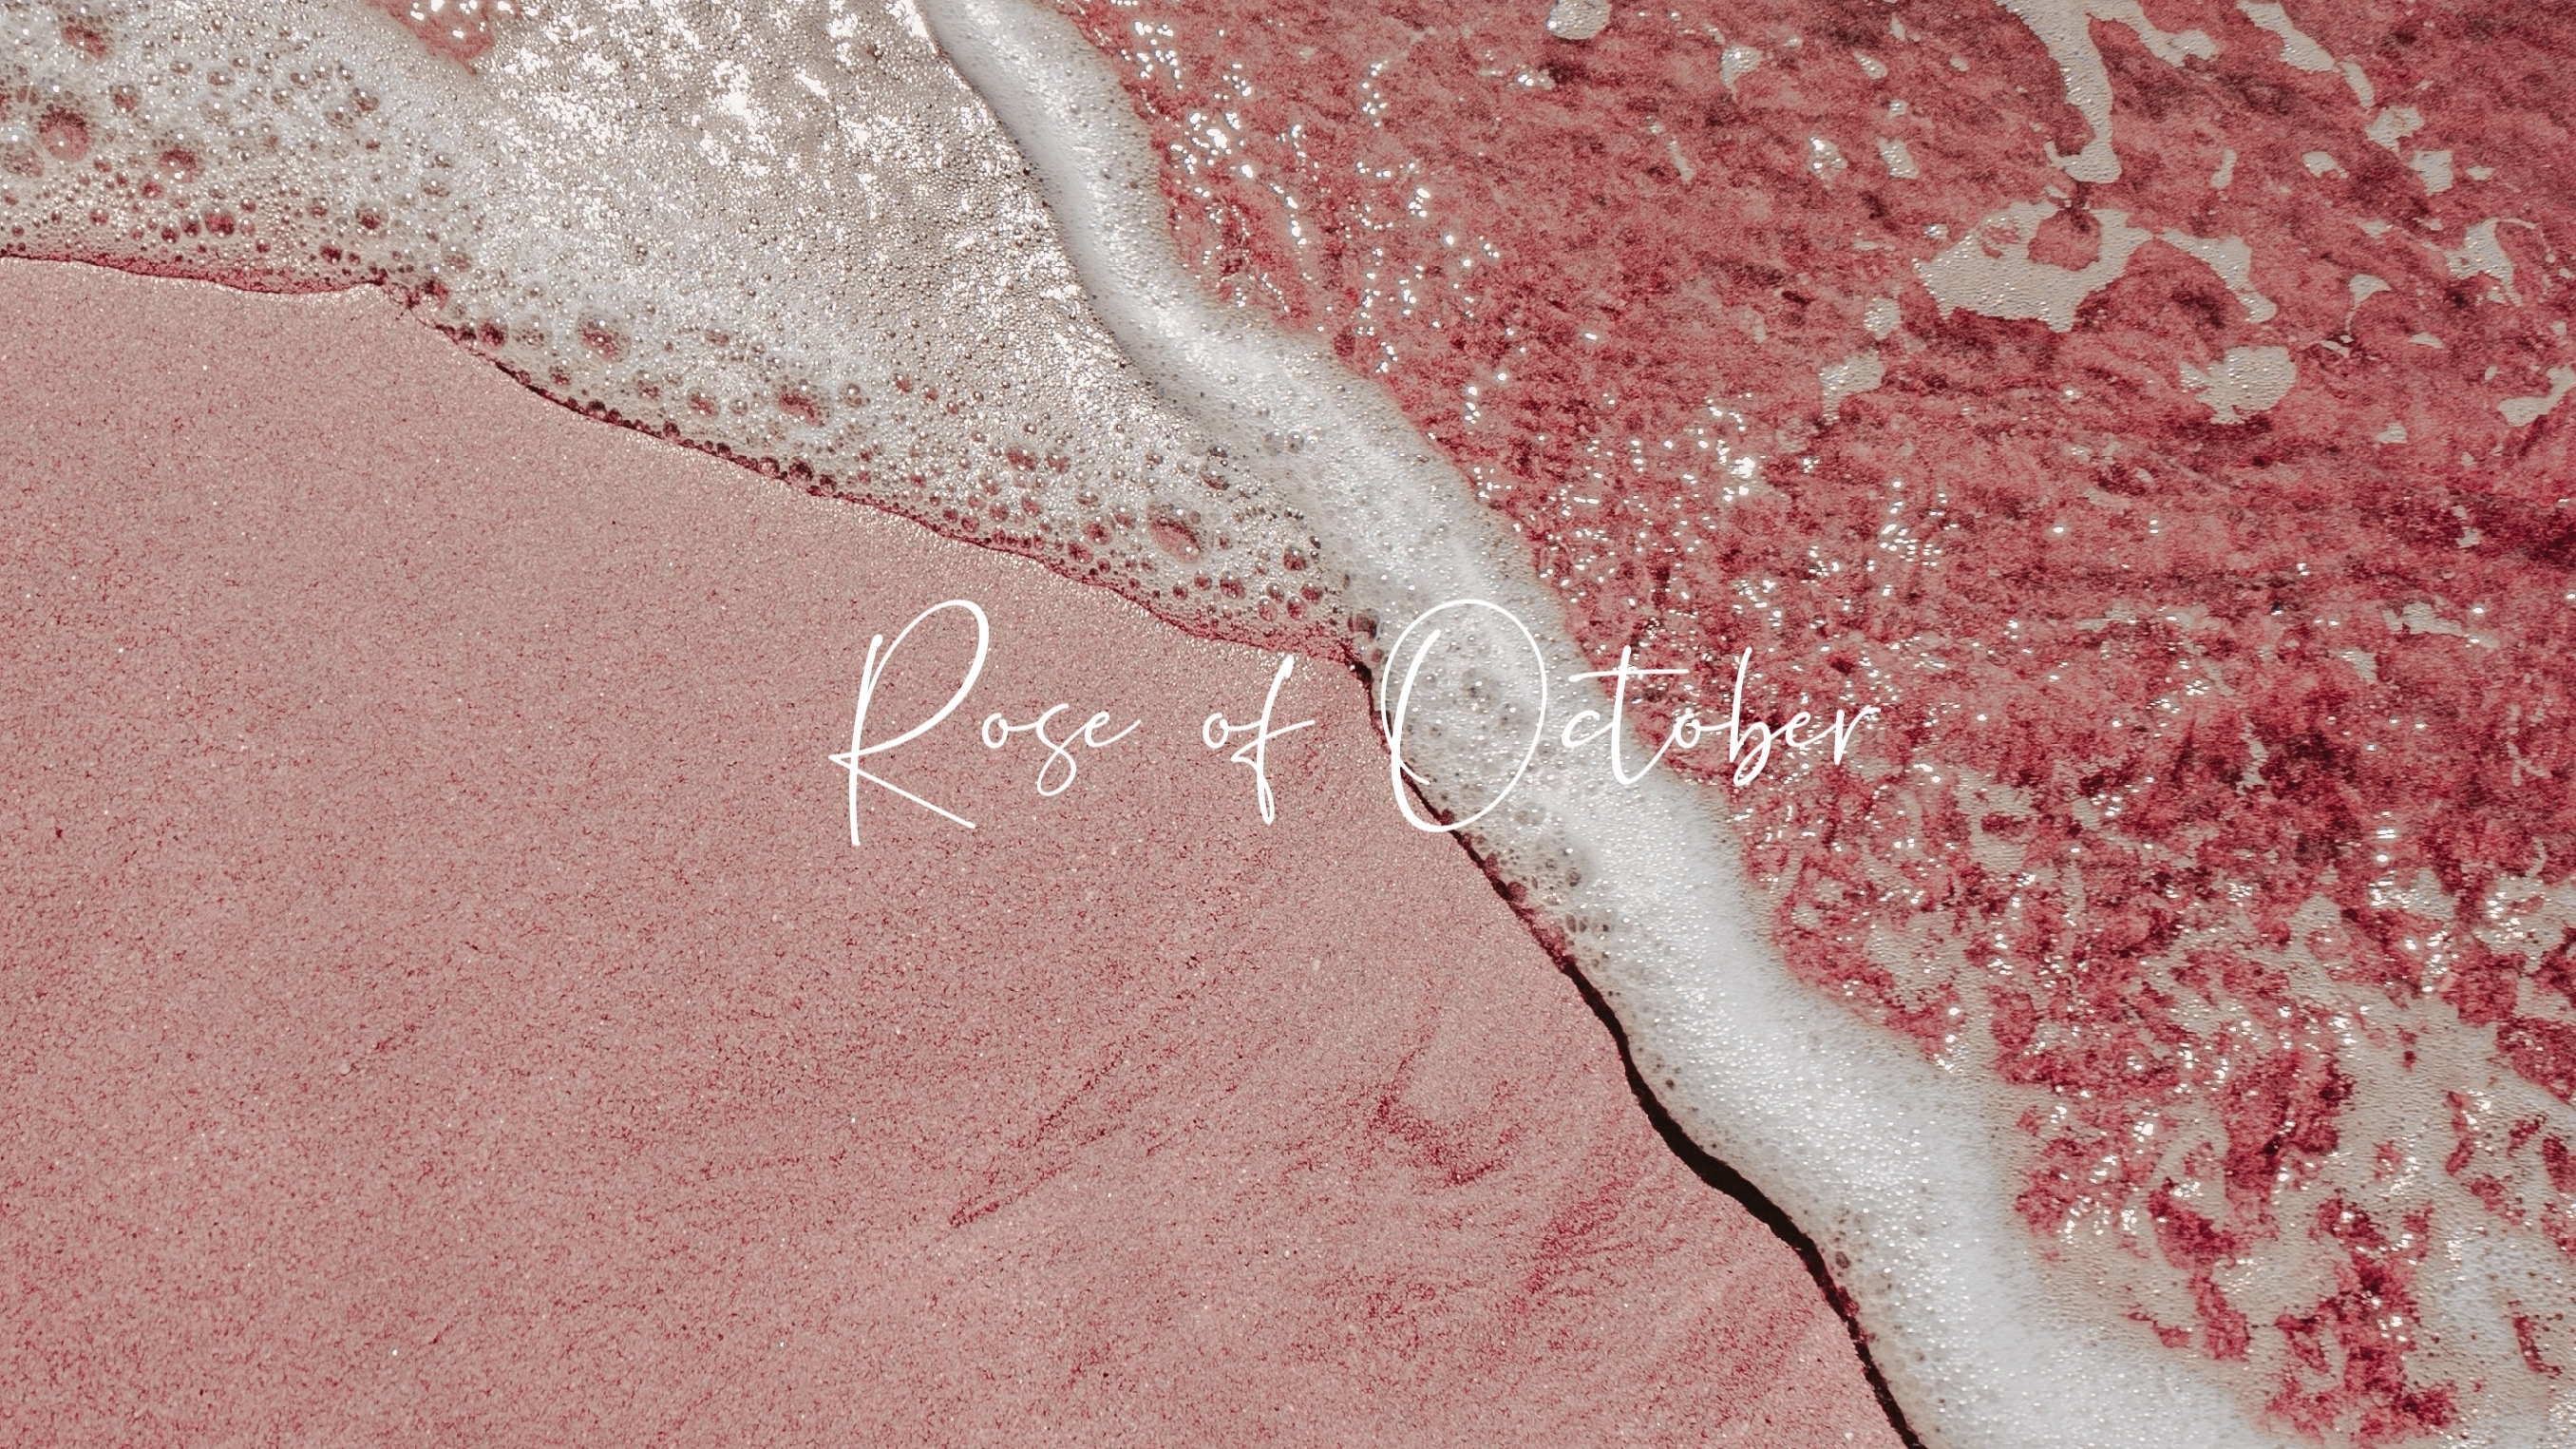 Rose of October